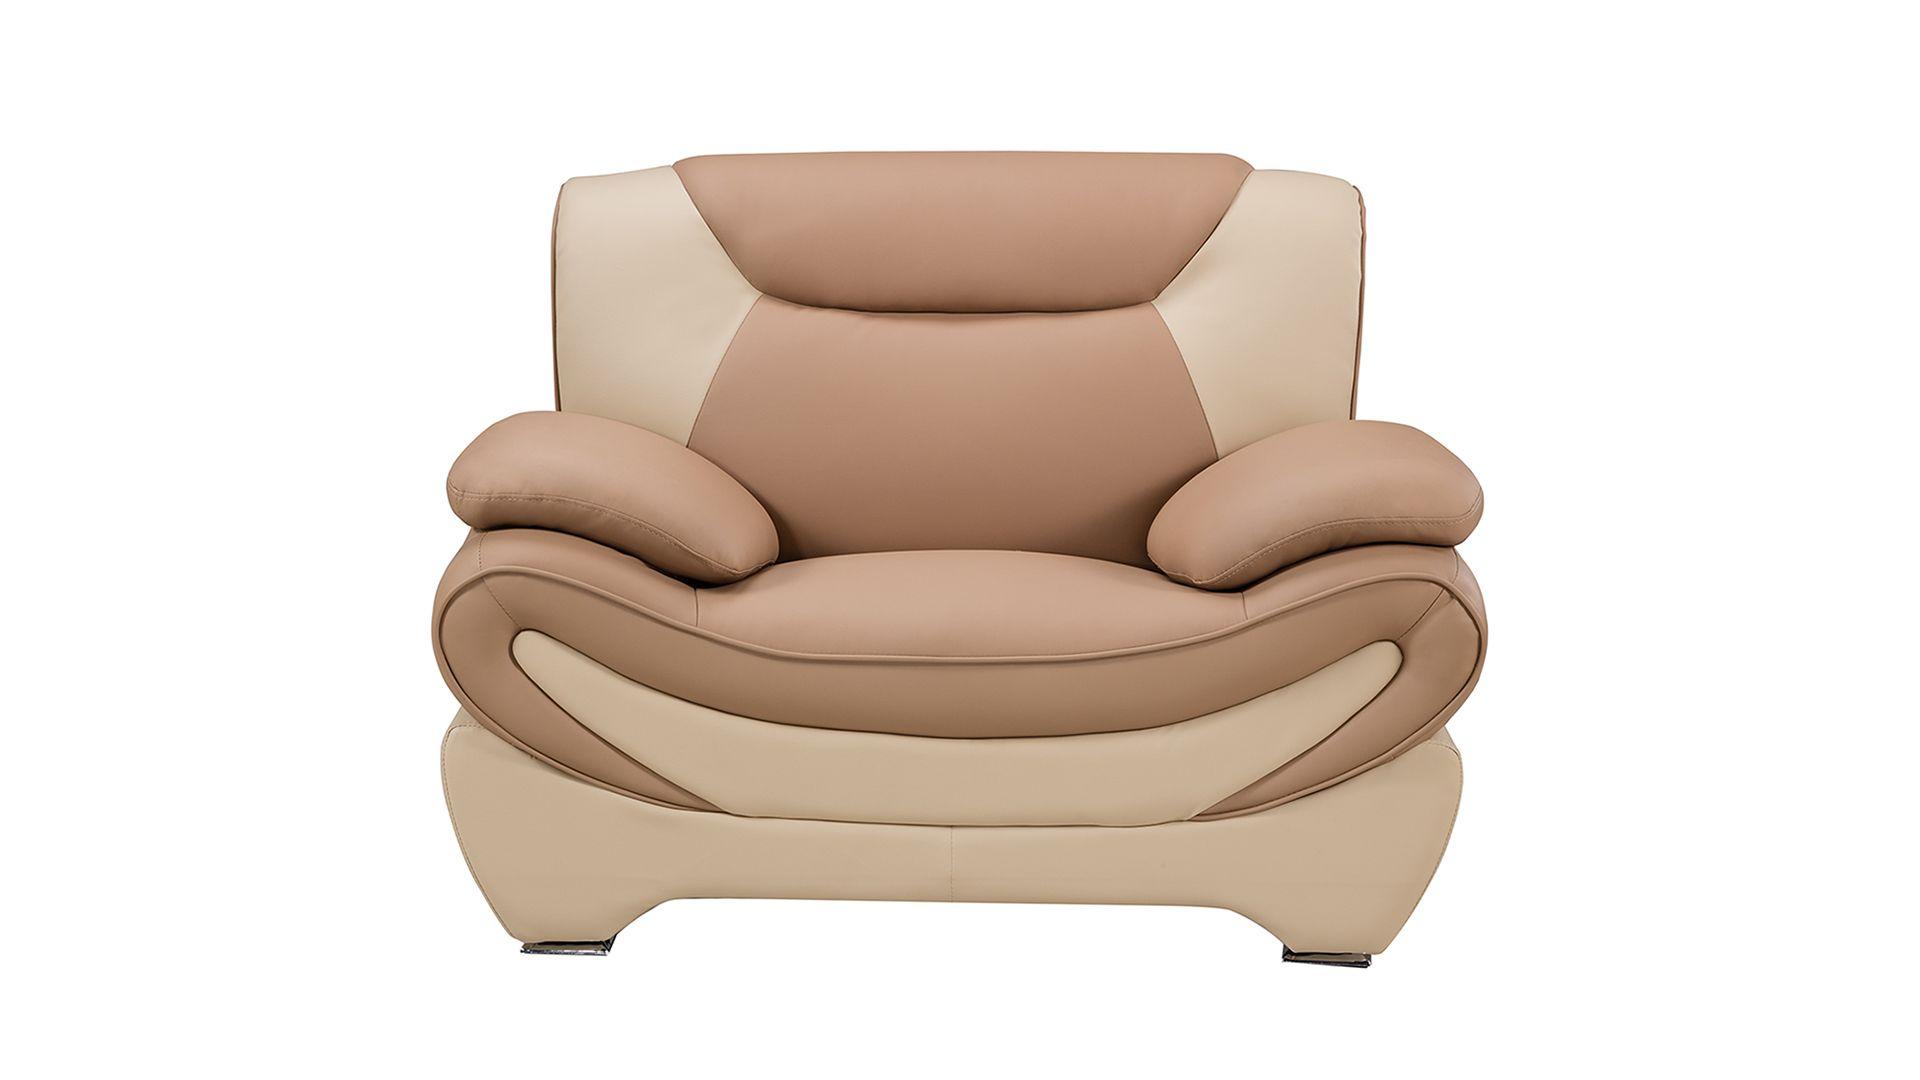 

    
AE209-CA.IV-Set-3 American Eagle Furniture Sofa Set
